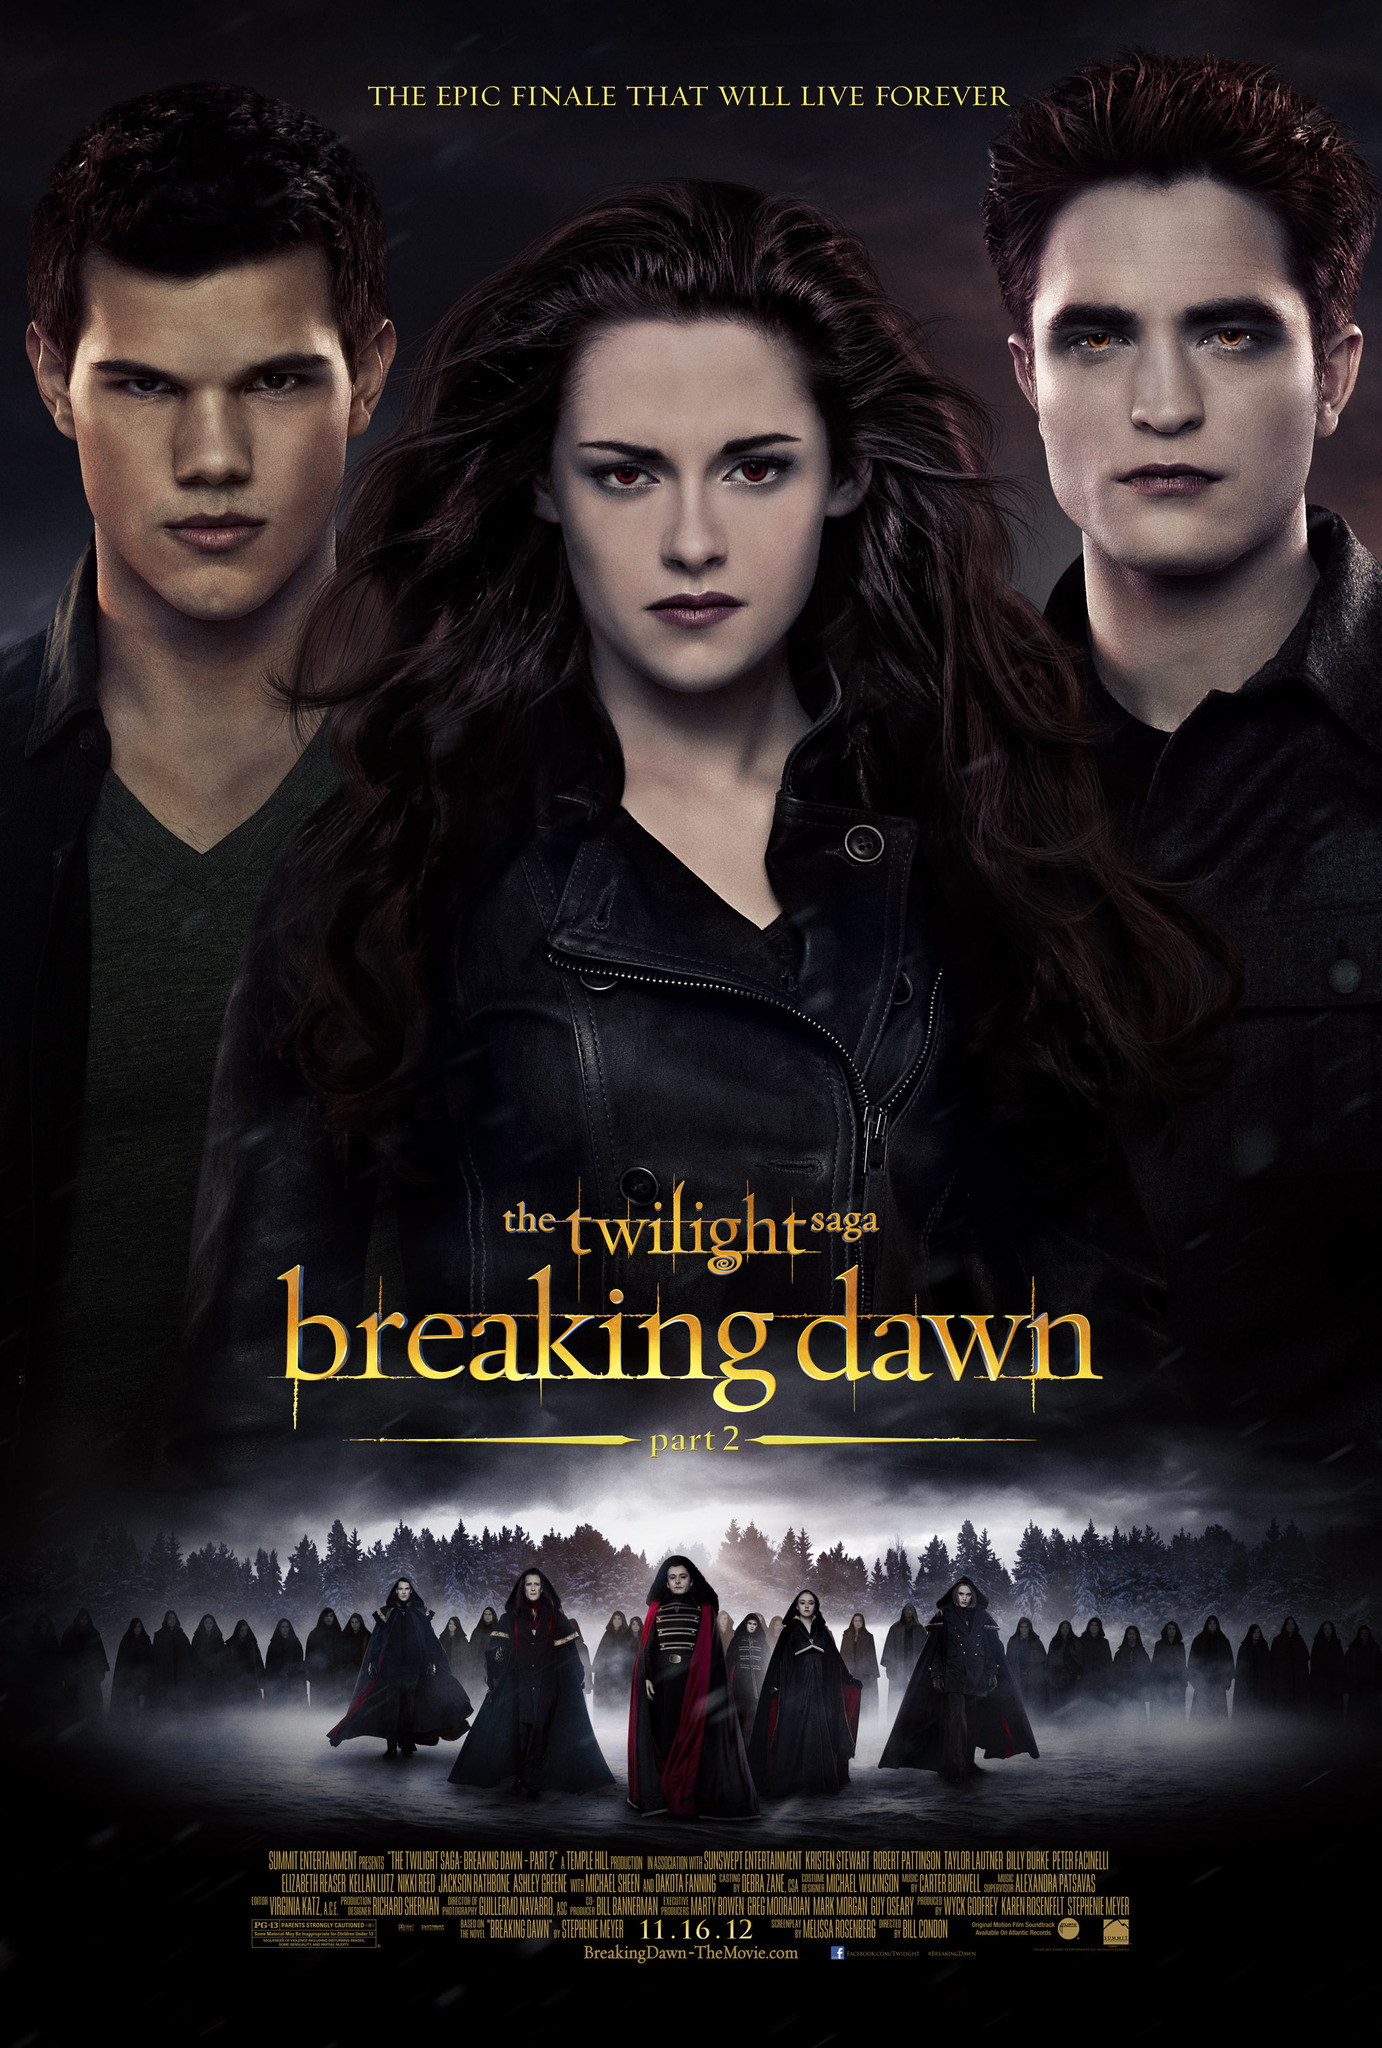 ดูหนังออนไลน์ The Twilight Saga Breaking Dawn Part 2 2012 แวมไพร์ ทไวไลท์ ซาก้า เบรคกิ้ง ดาวน์ ตอนที่ 2